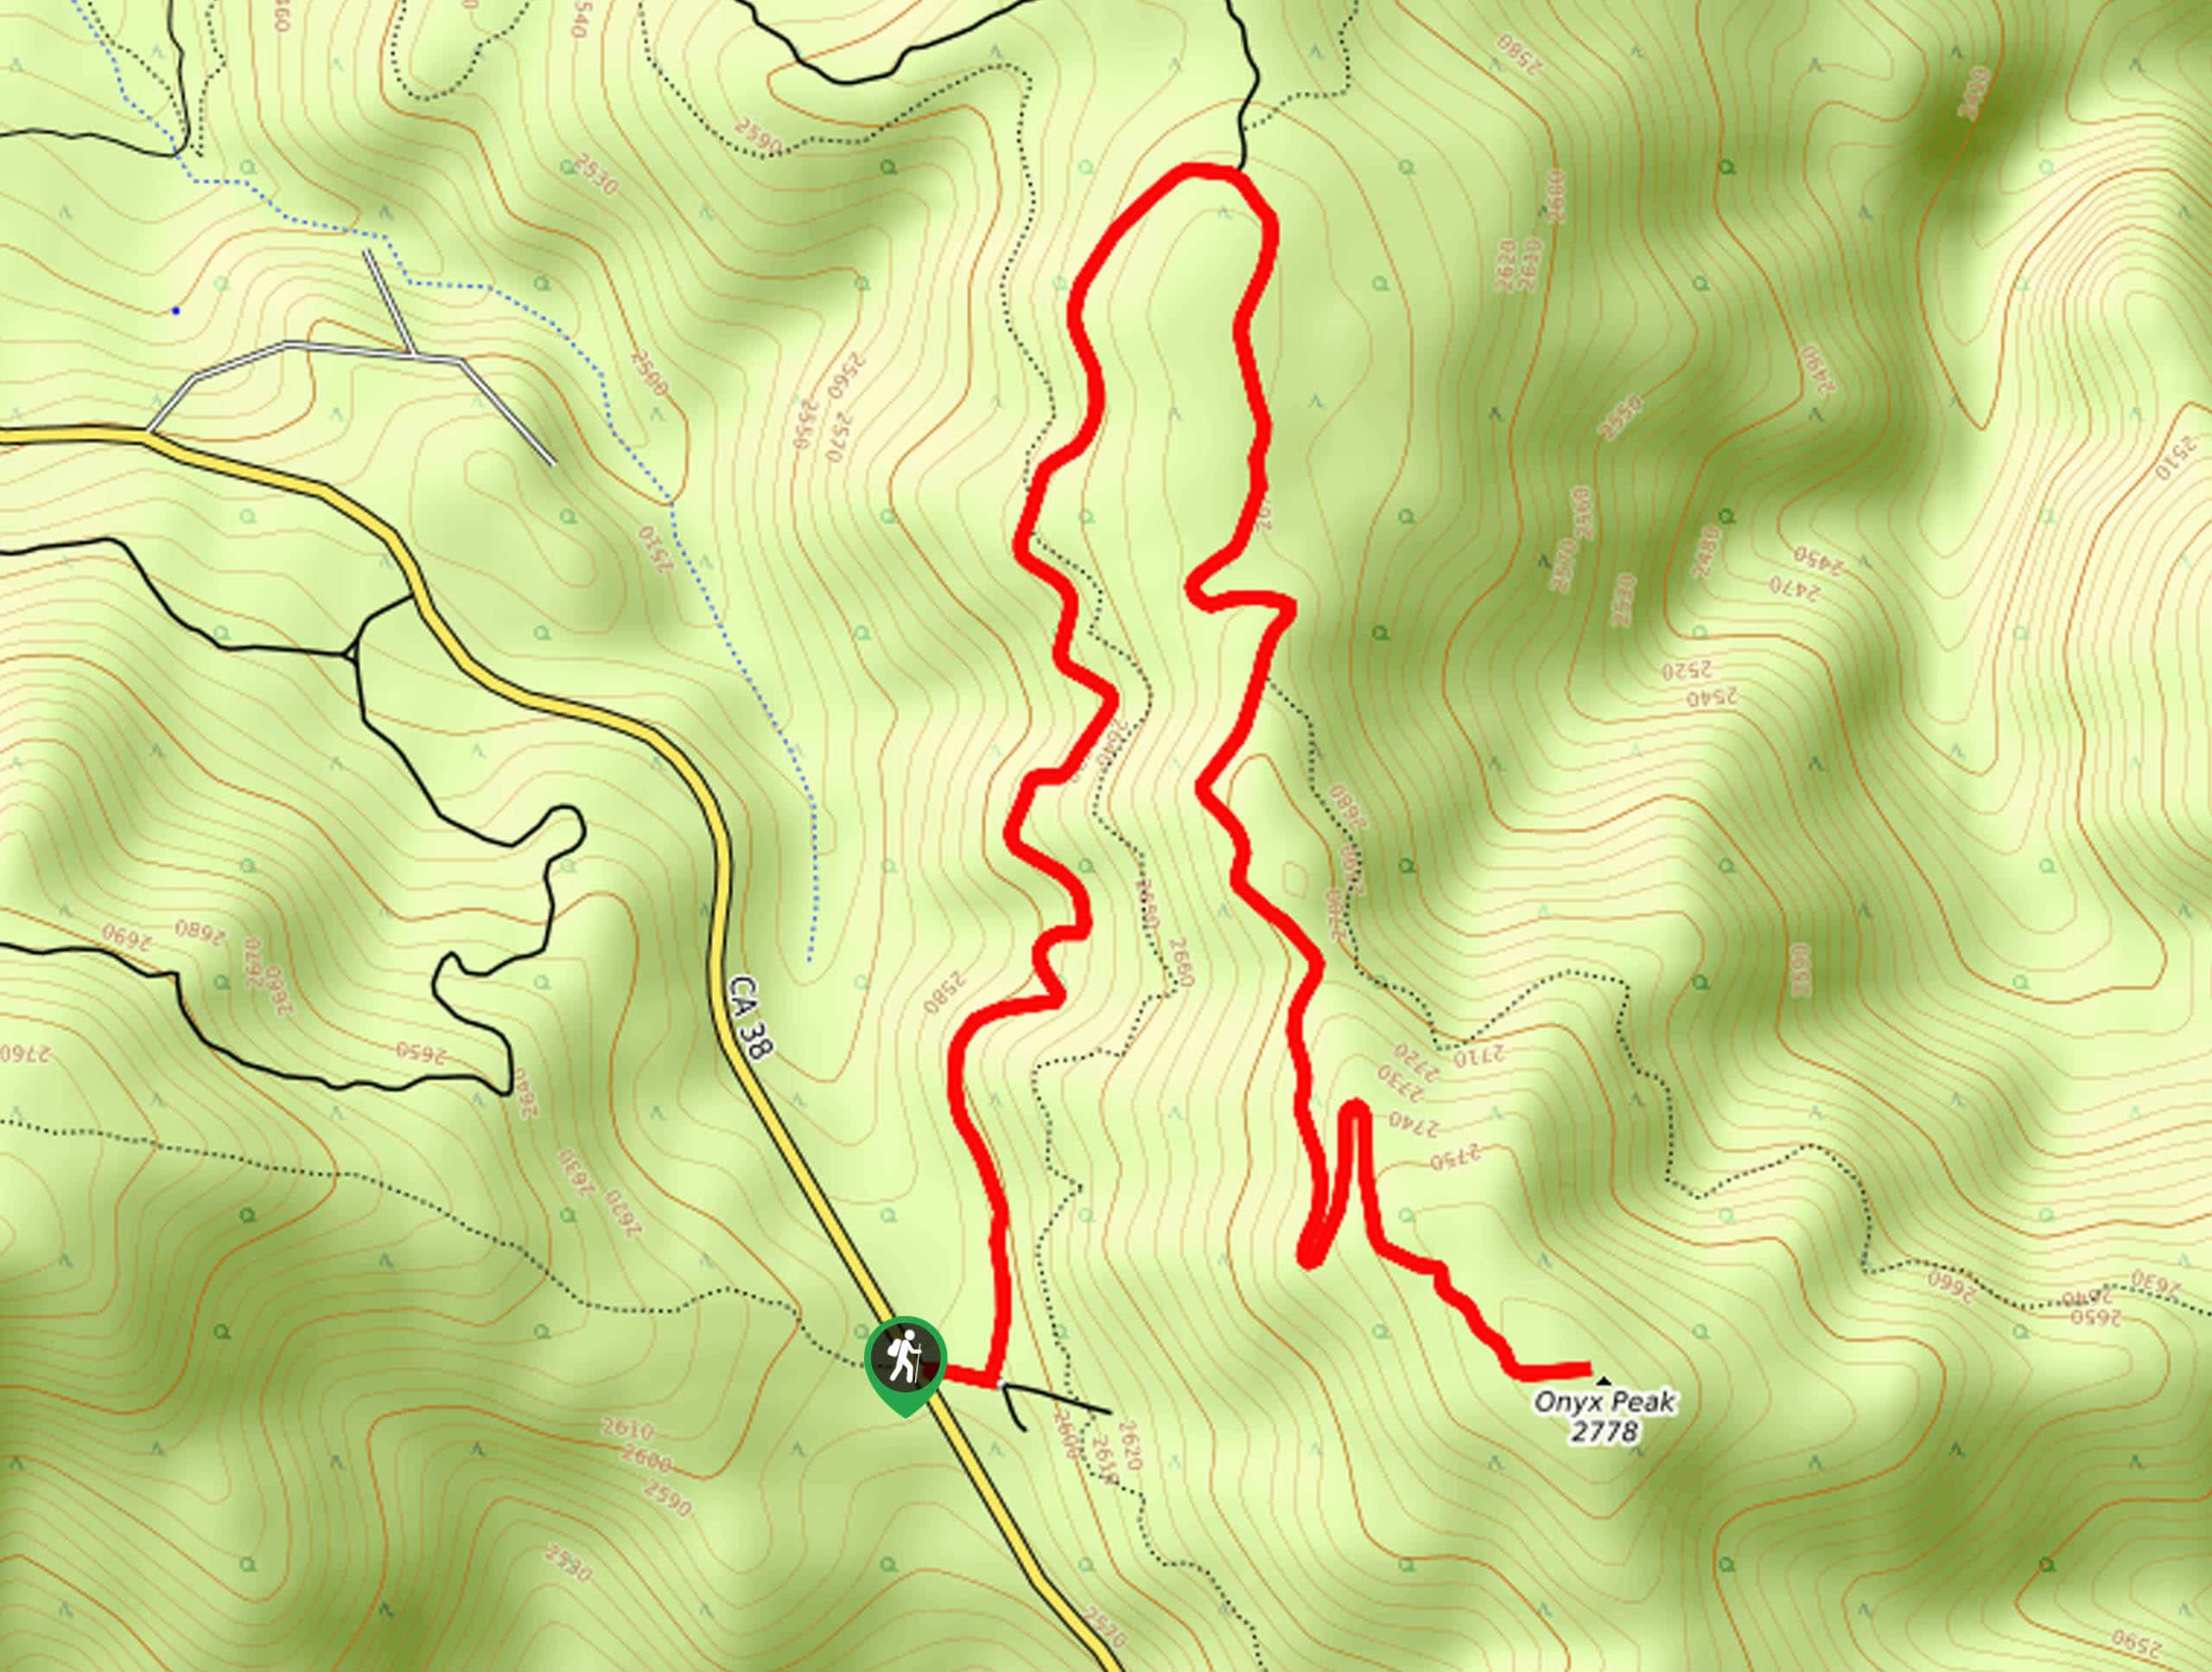 Onyx Peak Hike Map